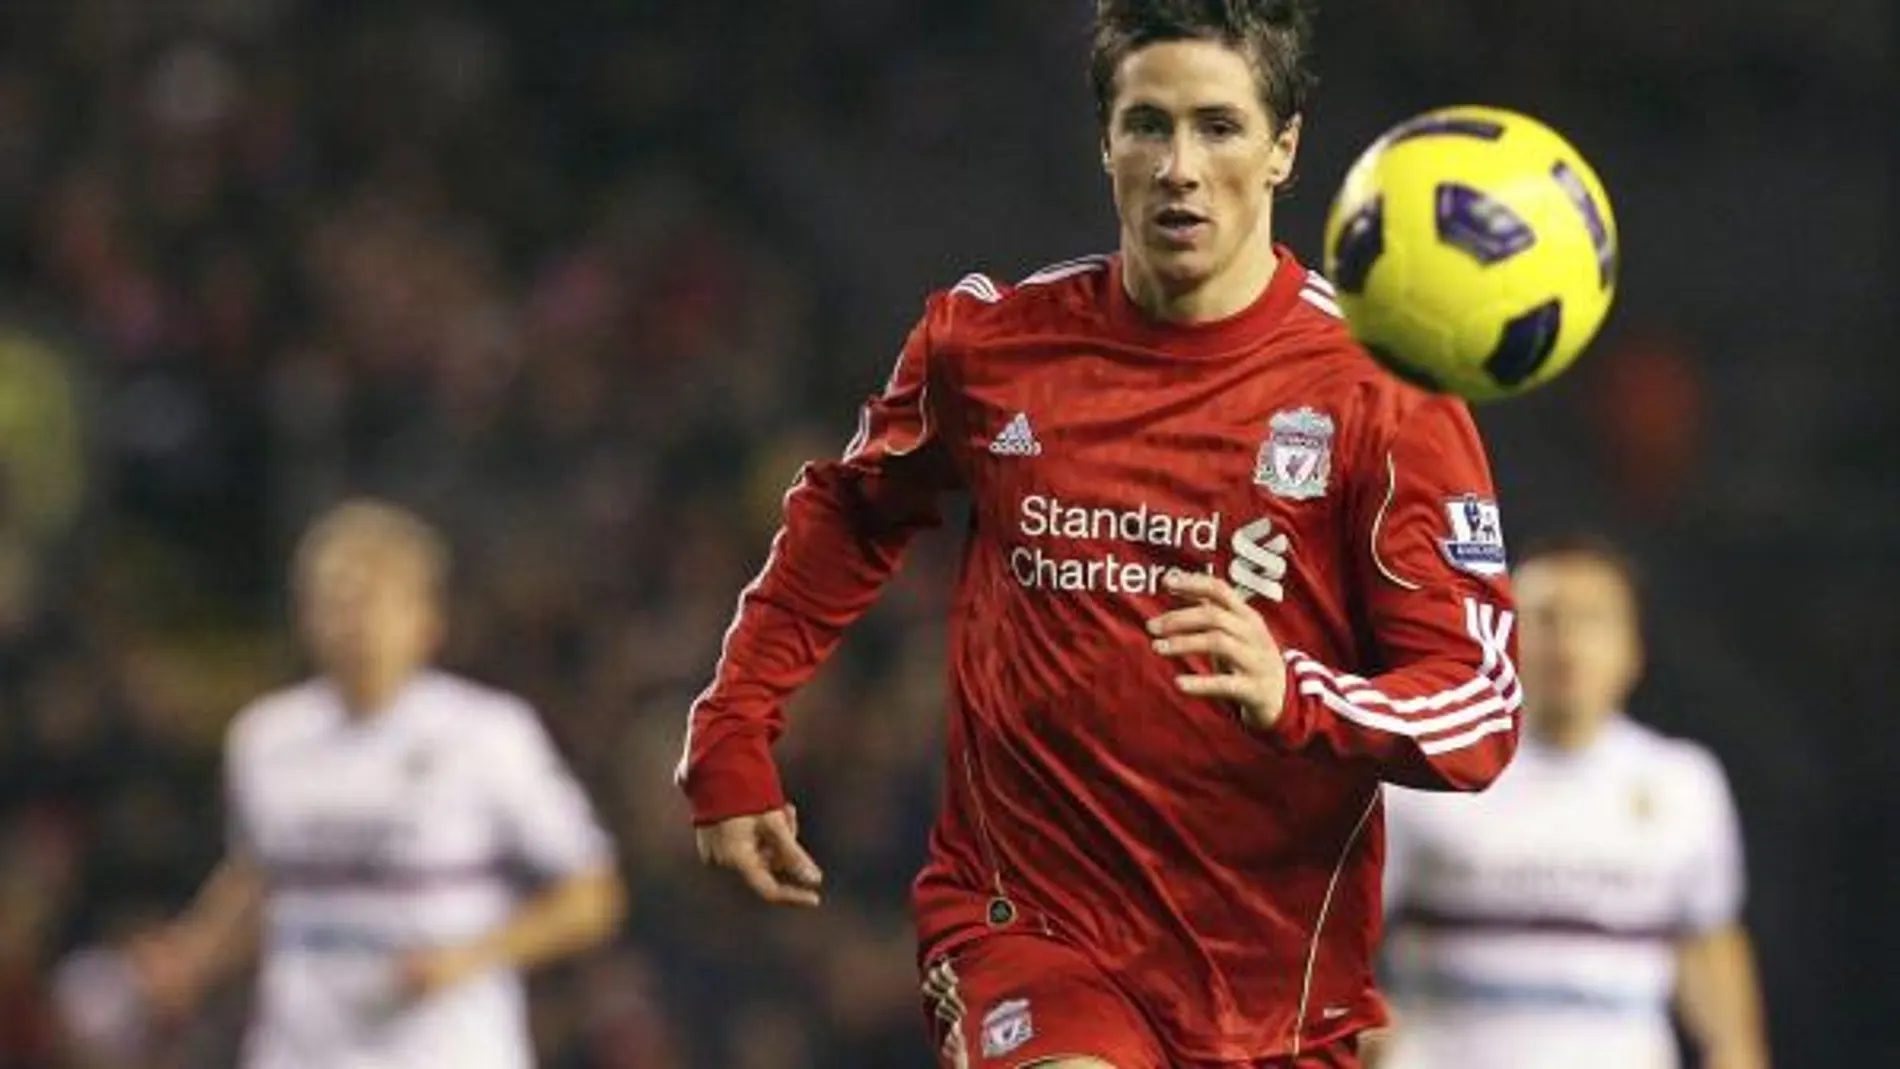 Imagen de archivo tomada el 20 de noviembre de 2010 que muestra al jugador del equipo inglés del Liverpool, Fernando Torres